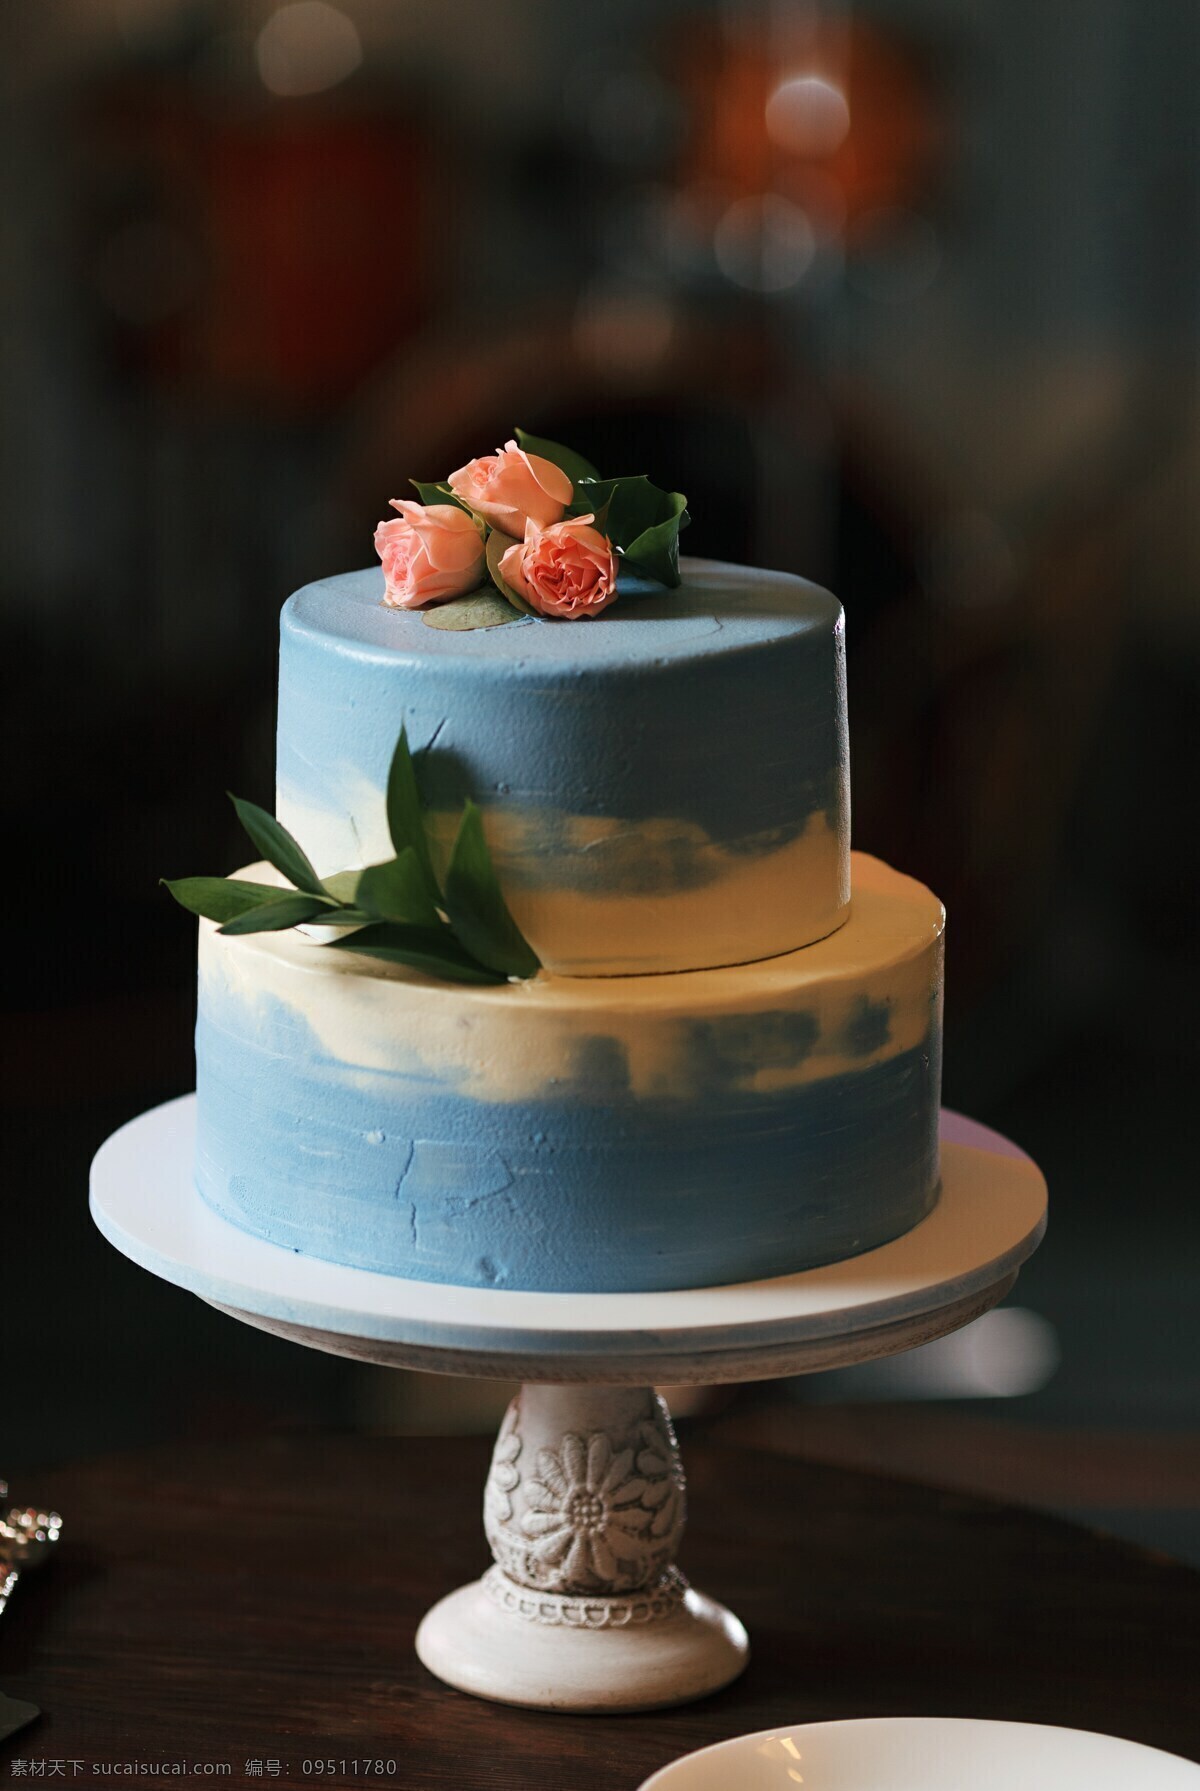 艺术蛋糕 翻糖蛋糕 婚庆蛋糕 生日蛋糕 蛋糕 韩式裱花 多层蛋糕 高层蛋糕 烘焙 甜点 婚庆 婚礼 皇家 欧式蛋糕 餐饮美食 西餐美食